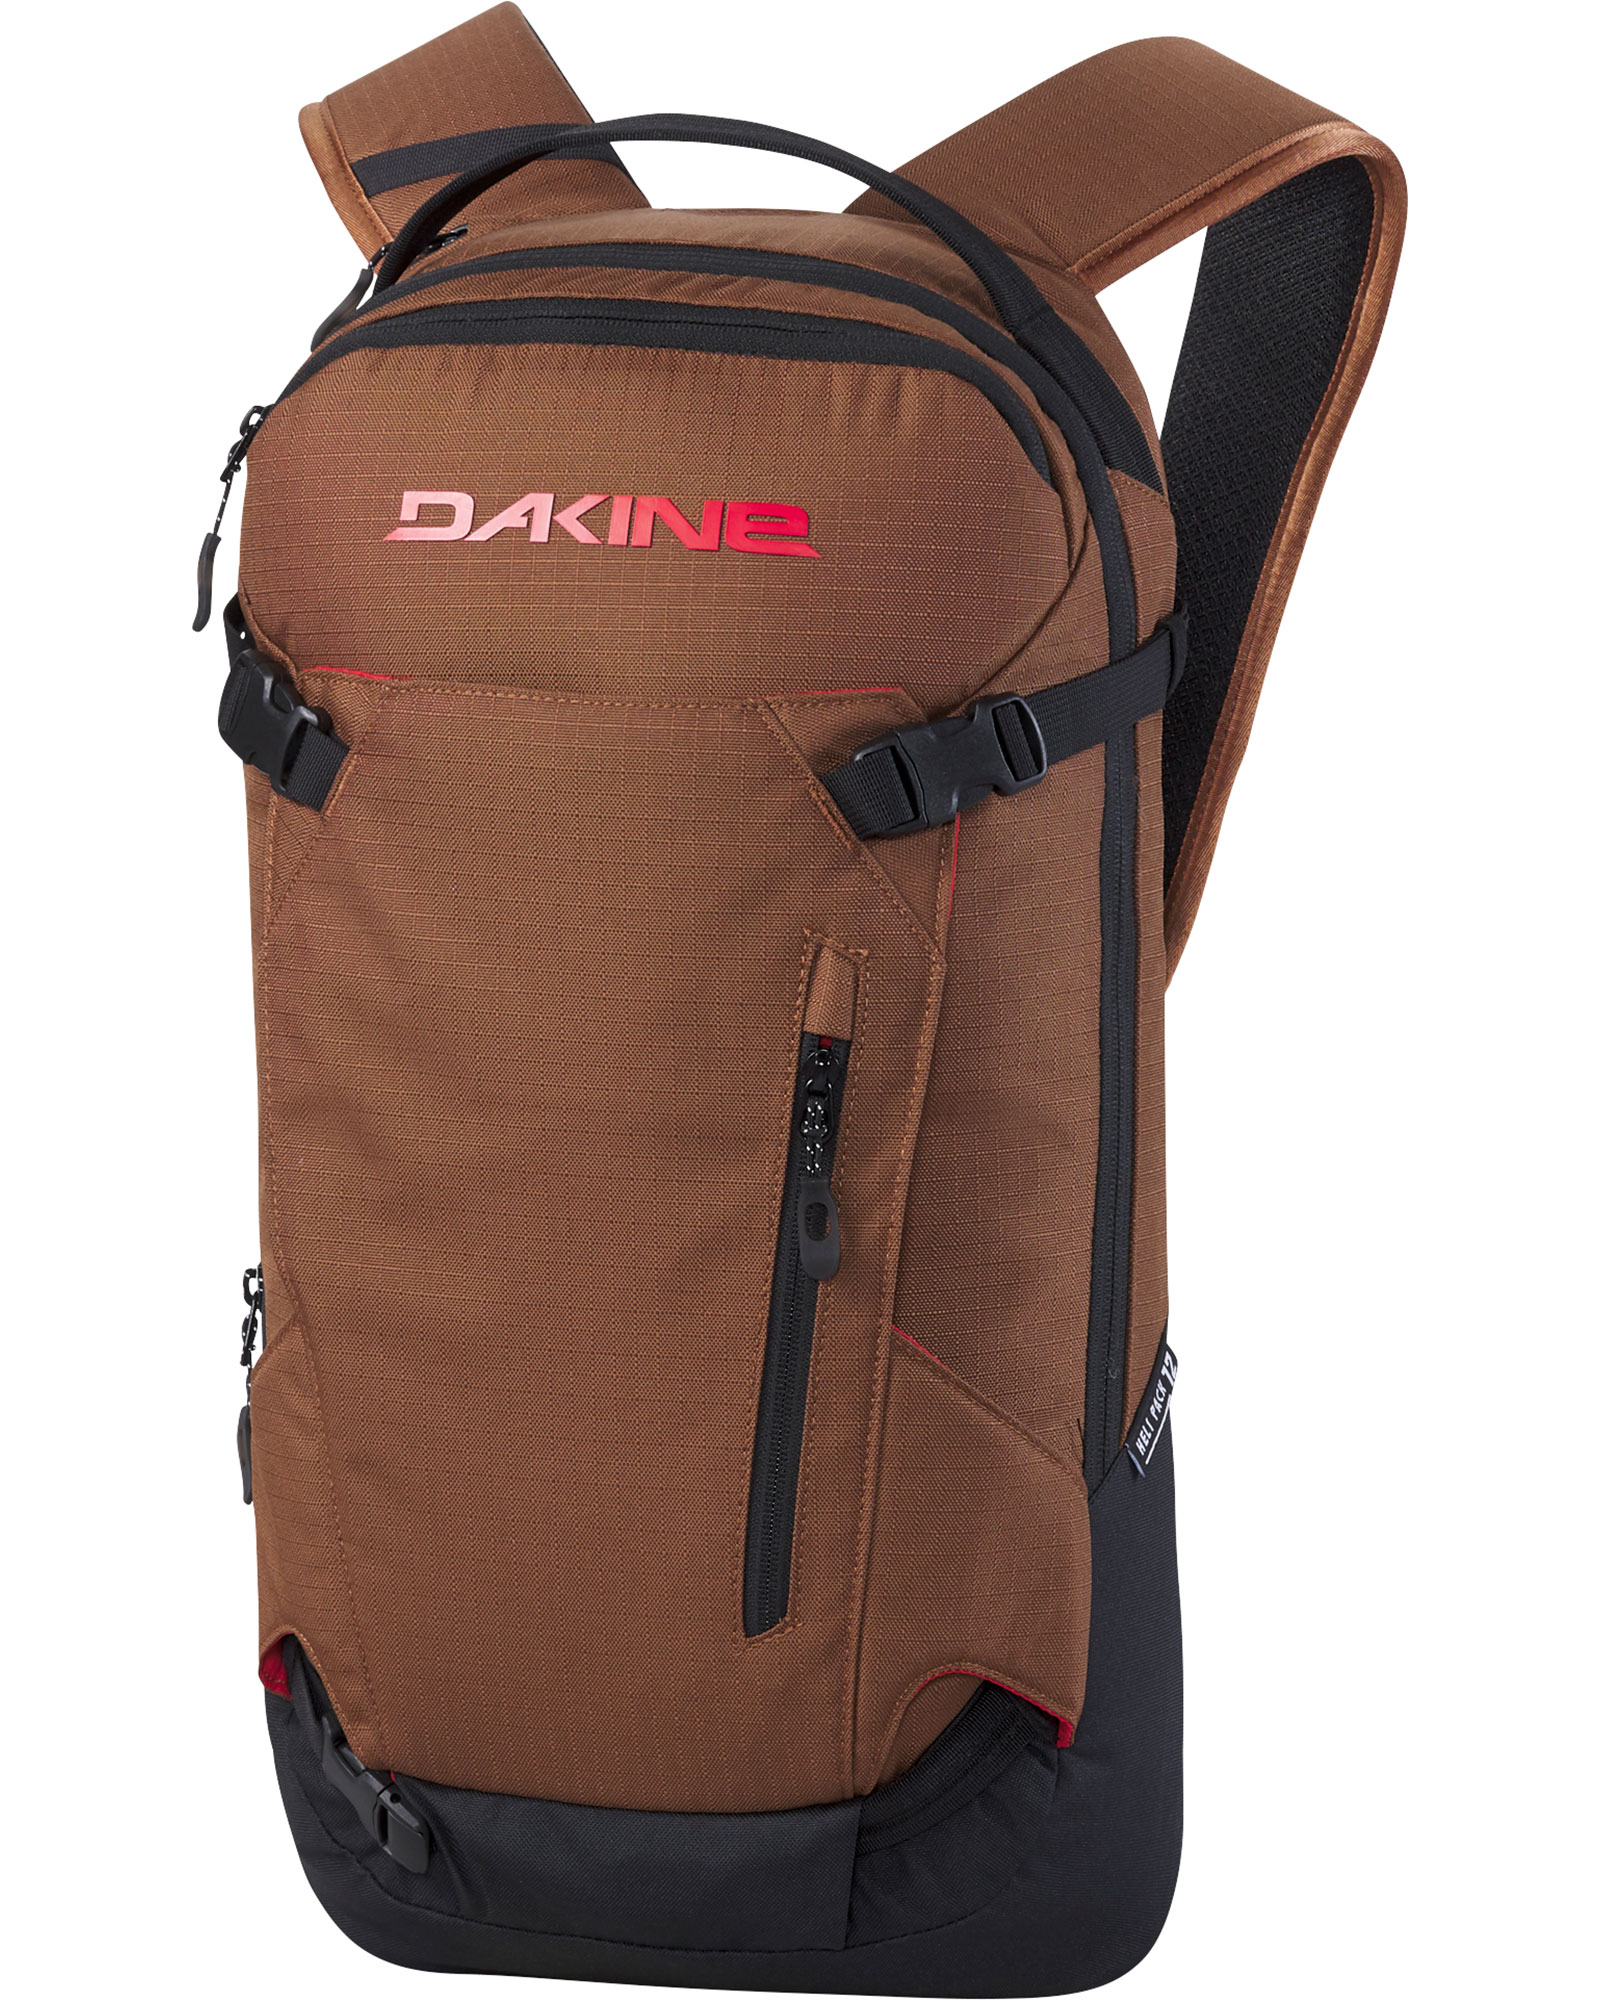 Dakine Heli Pack 12L Backpack - Bison